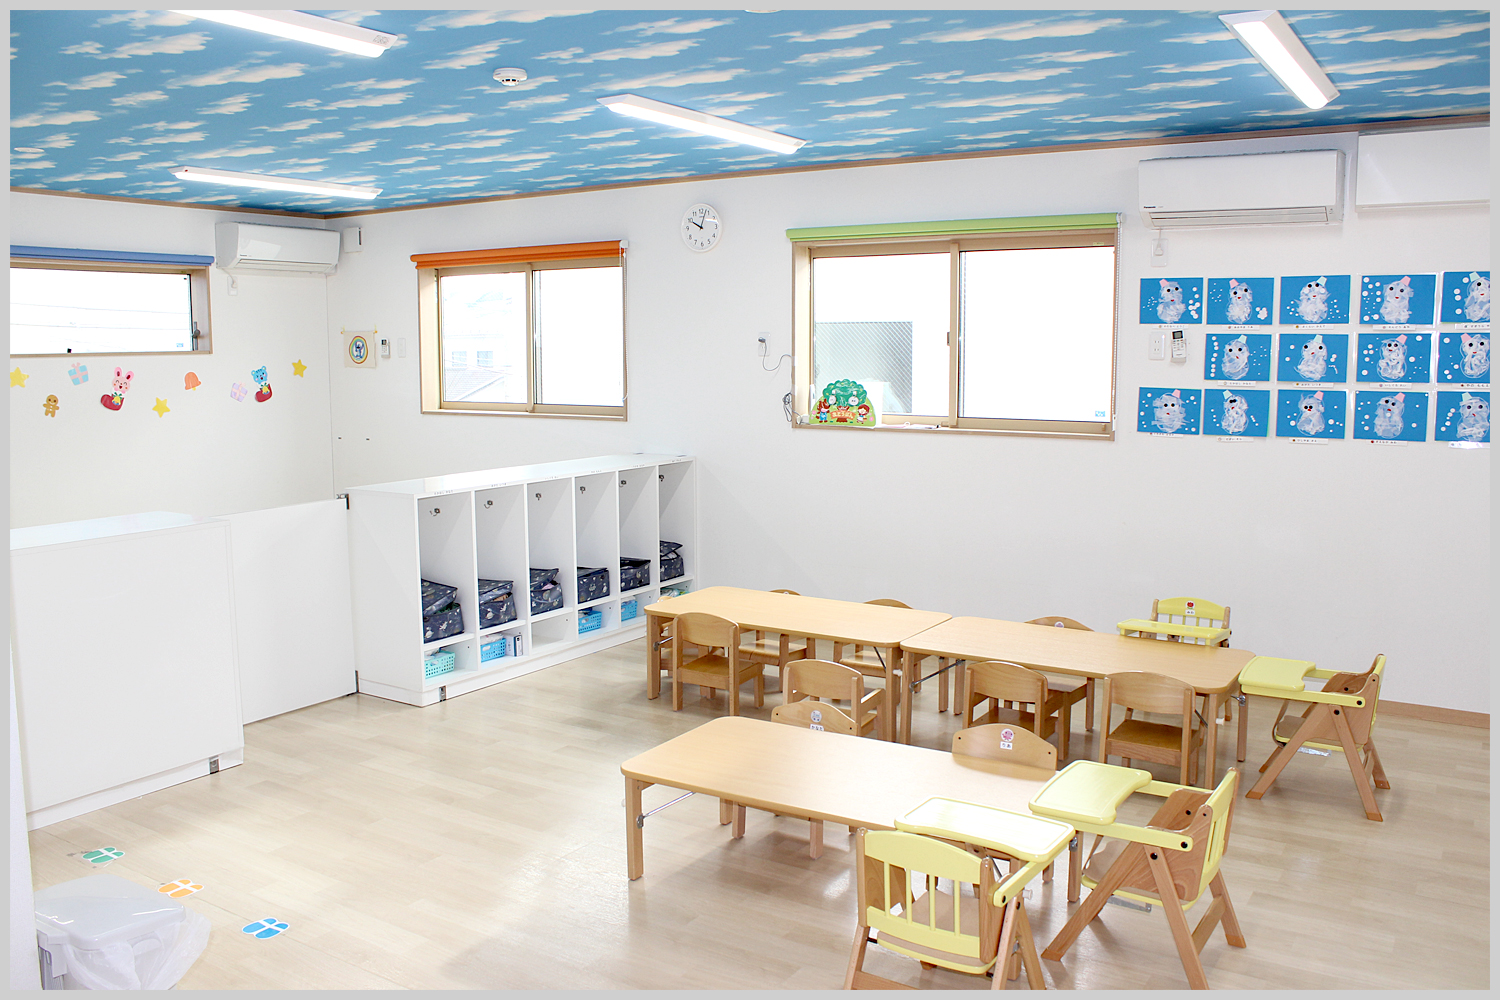 れいんぼーなーさりー原町館2の1・2歳児室です